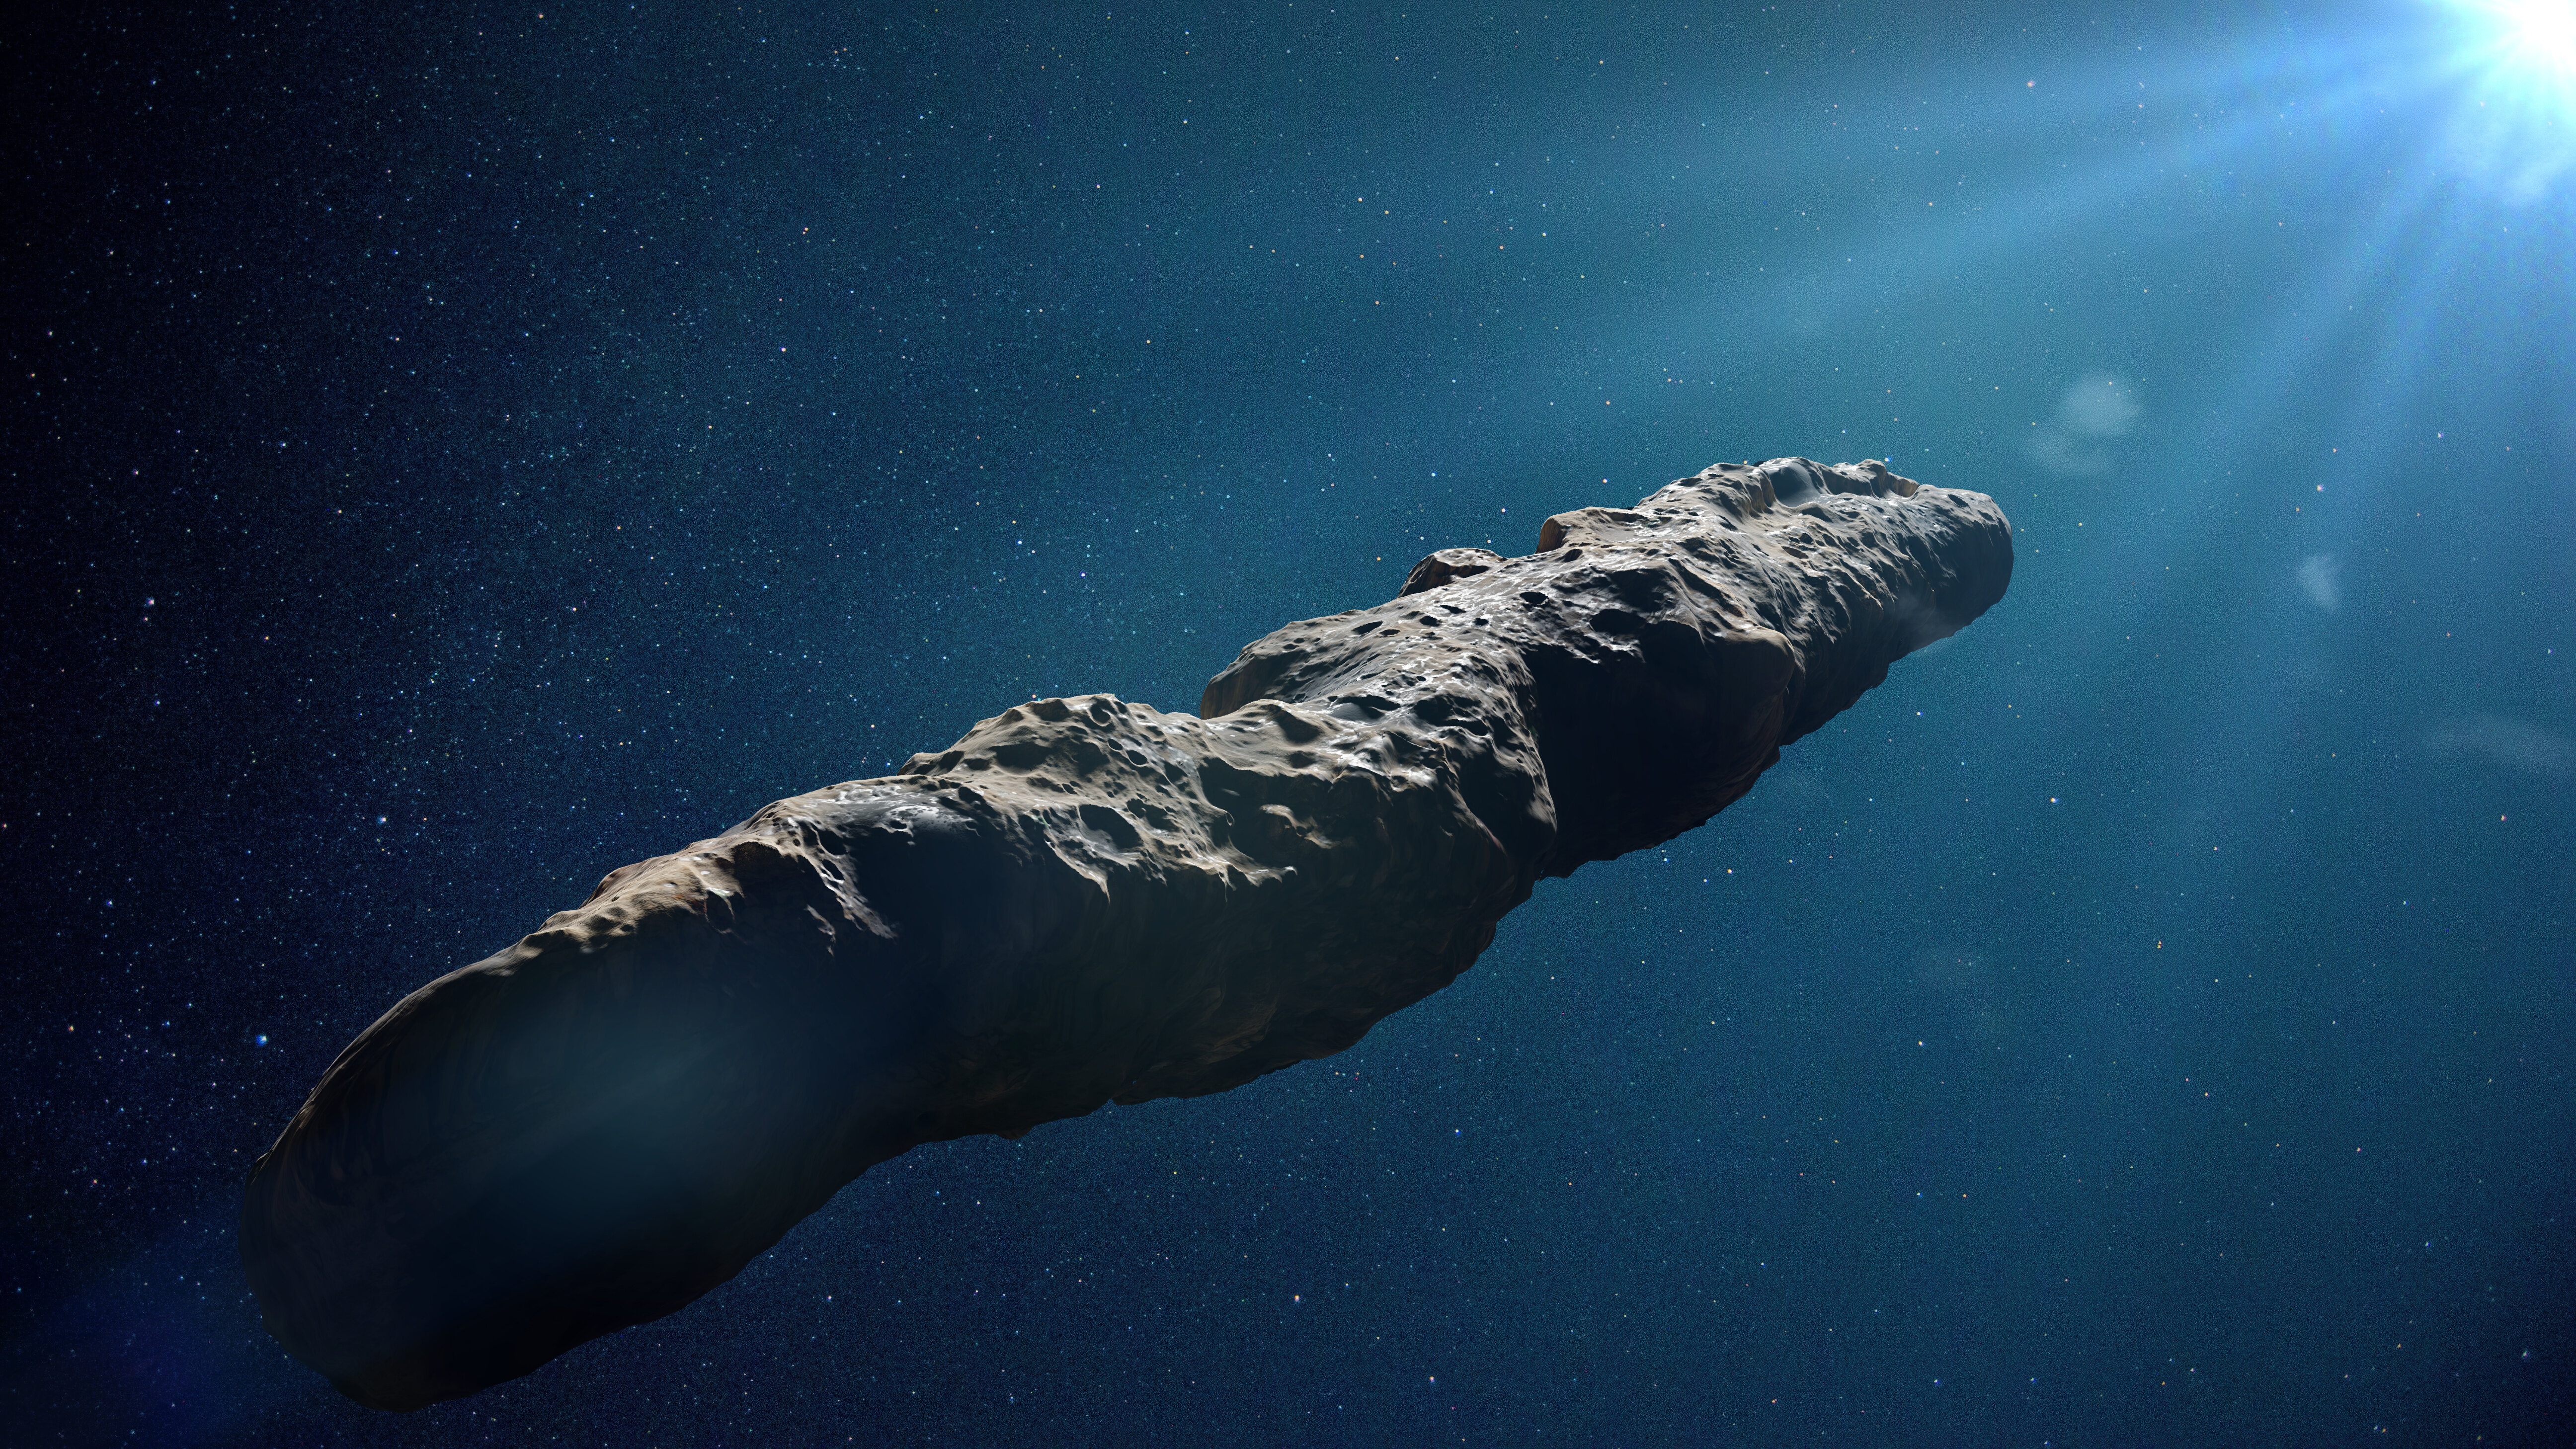 Des astrophysiciens ont peut-être trouvé un moyen d’expliquer les étranges caractéristiques de ‘Oumuamua. Il s'agirait d'une comète interstellaire, dont la trajectoire étrange serait due à un dégazage d'hydrogène. © dottedyeti, Adobe Stock